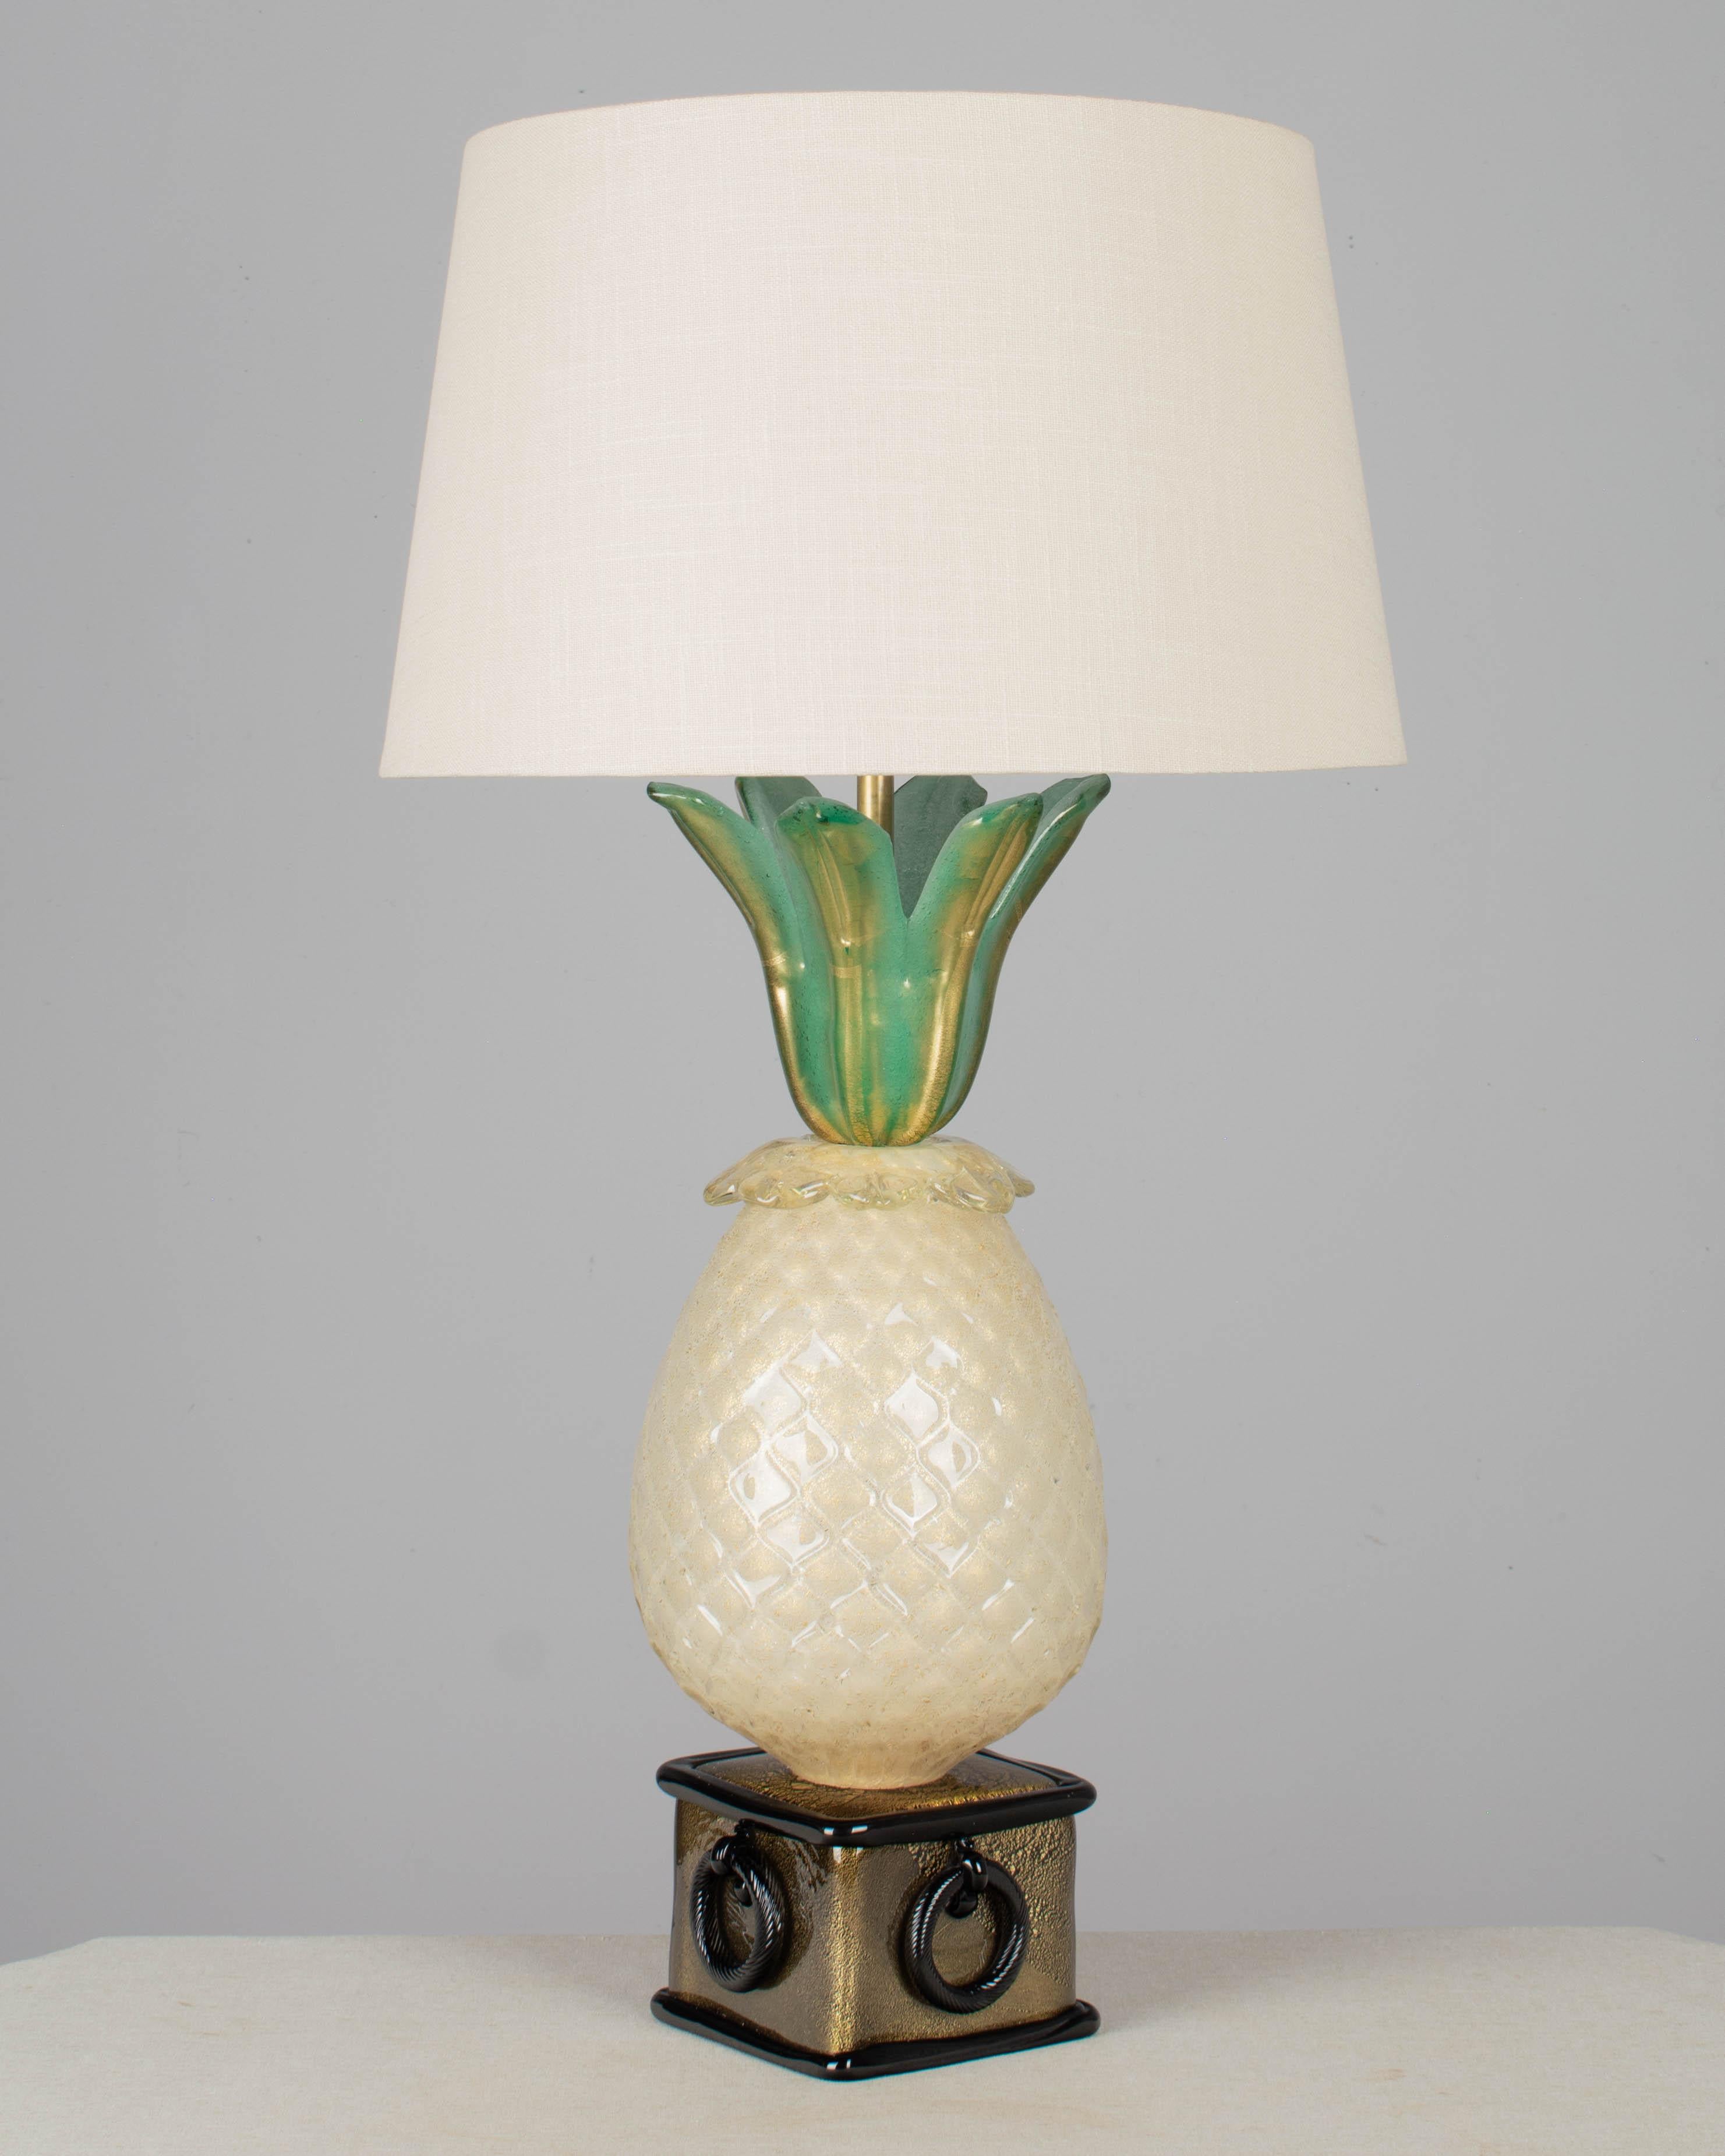 A Mid Century Murano Glas Ananas Form Lampe von Barovier & Toso. In drei Teilen: quadratischer schwarzer Sockel mit ringförmigen Details, große strukturierte Ananas und grüne Blätter, alle mit Goldeinschlüssen. Eine beeindruckende große Lampe für